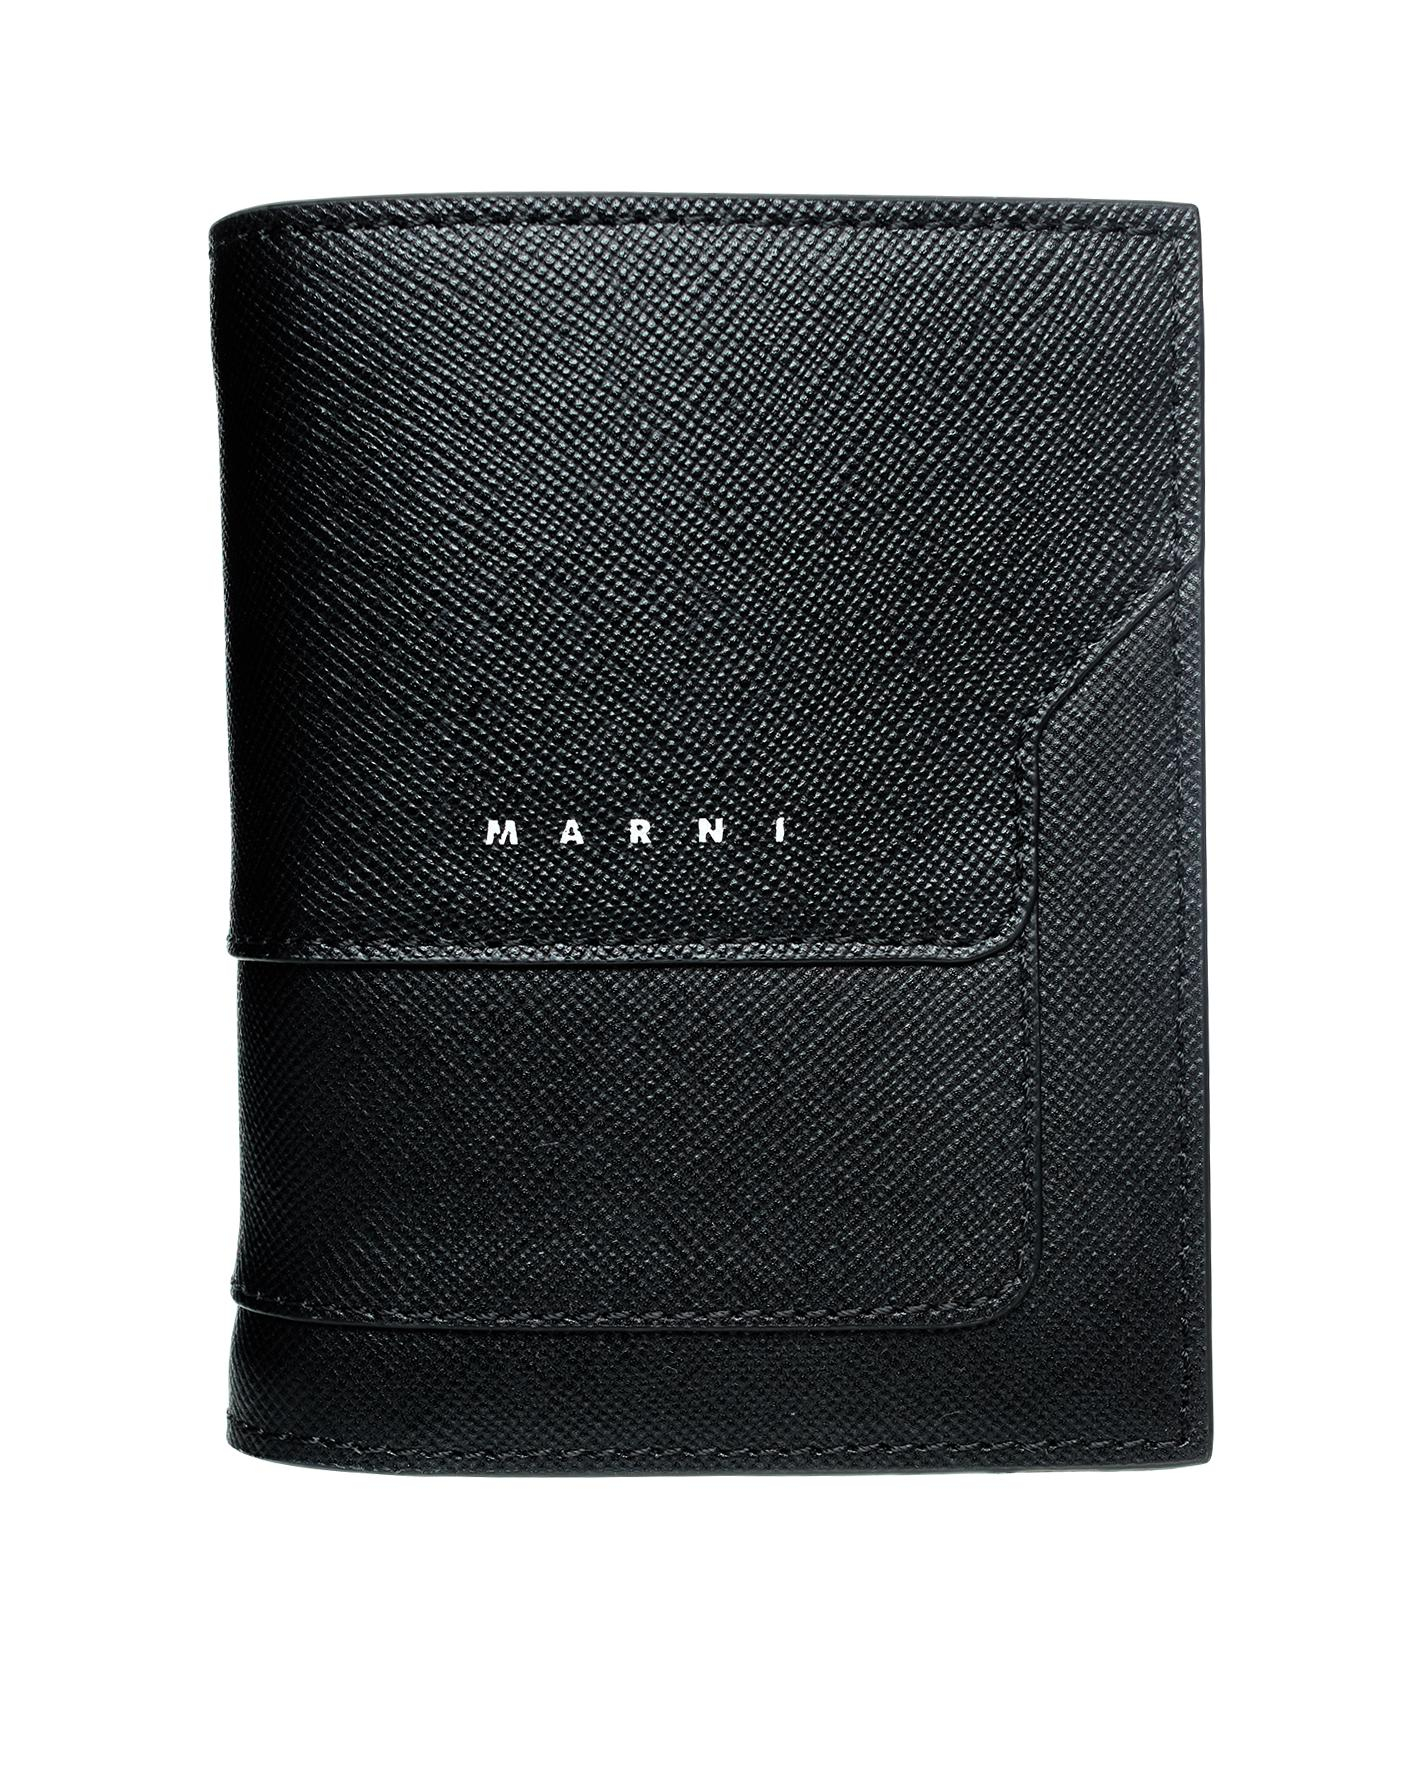 ЧЕрный кошелек из зернистой кожи с логотипом Marni PFMI0046U0/LV520/Z356N, размер One Size PFMI0046U0/LV520/Z356N - фото 1